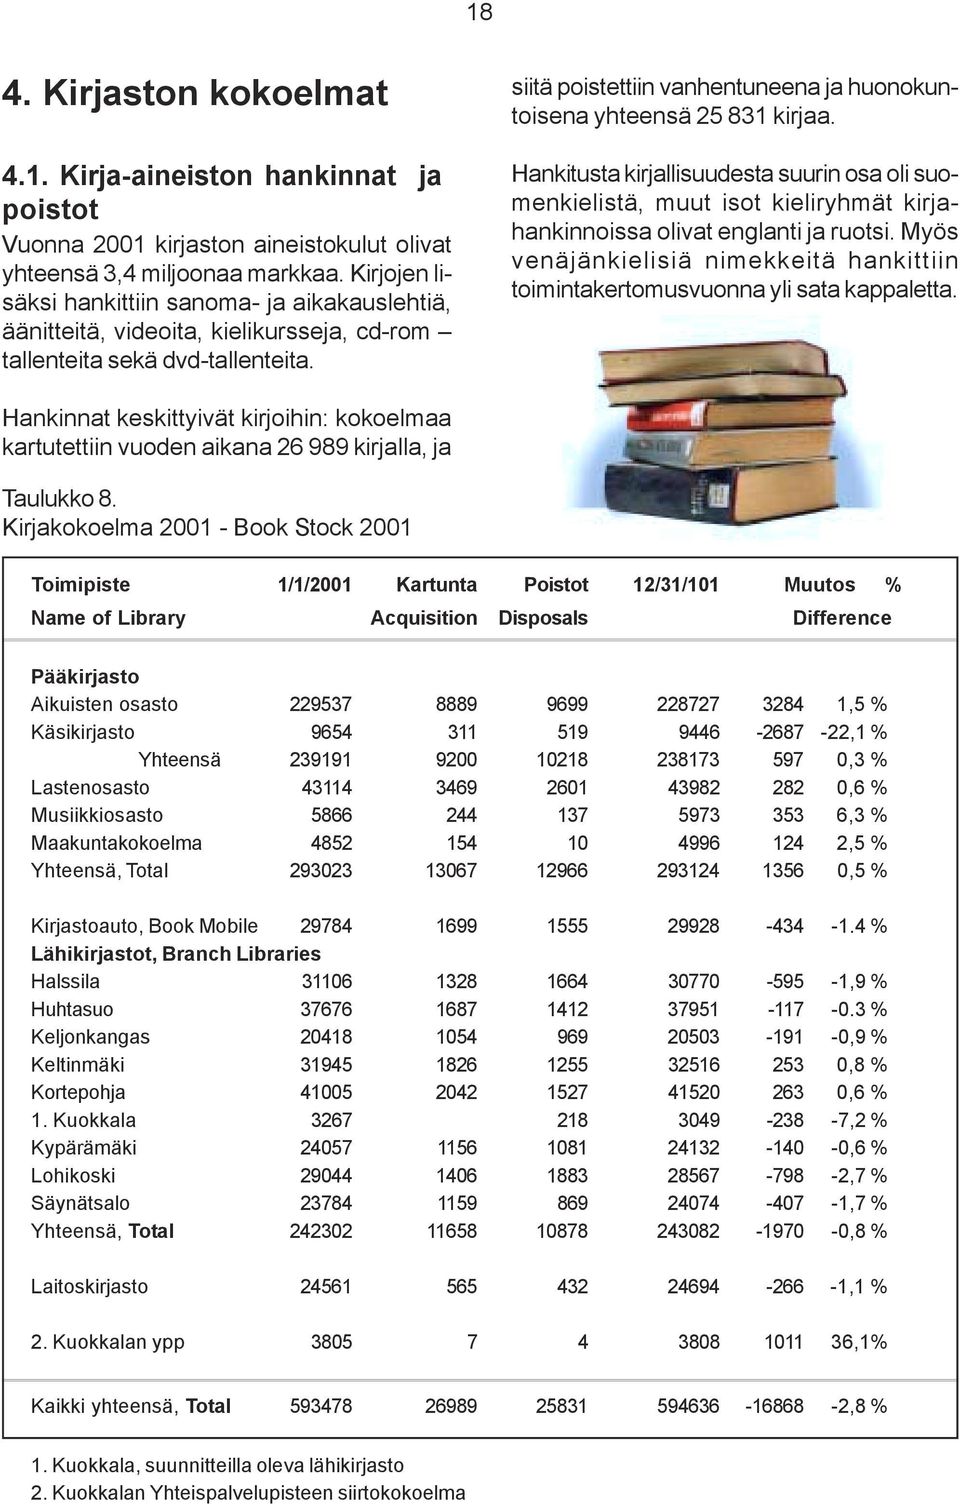 siitä poistettiin vanhentuneena ja huonokuntoisena yhteensä 25 831 kirjaa. Hankitusta kirjallisuudesta suurin osa oli suomenkielistä, muut isot kieliryhmät kirjahankinnoissa olivat englanti ja ruotsi.